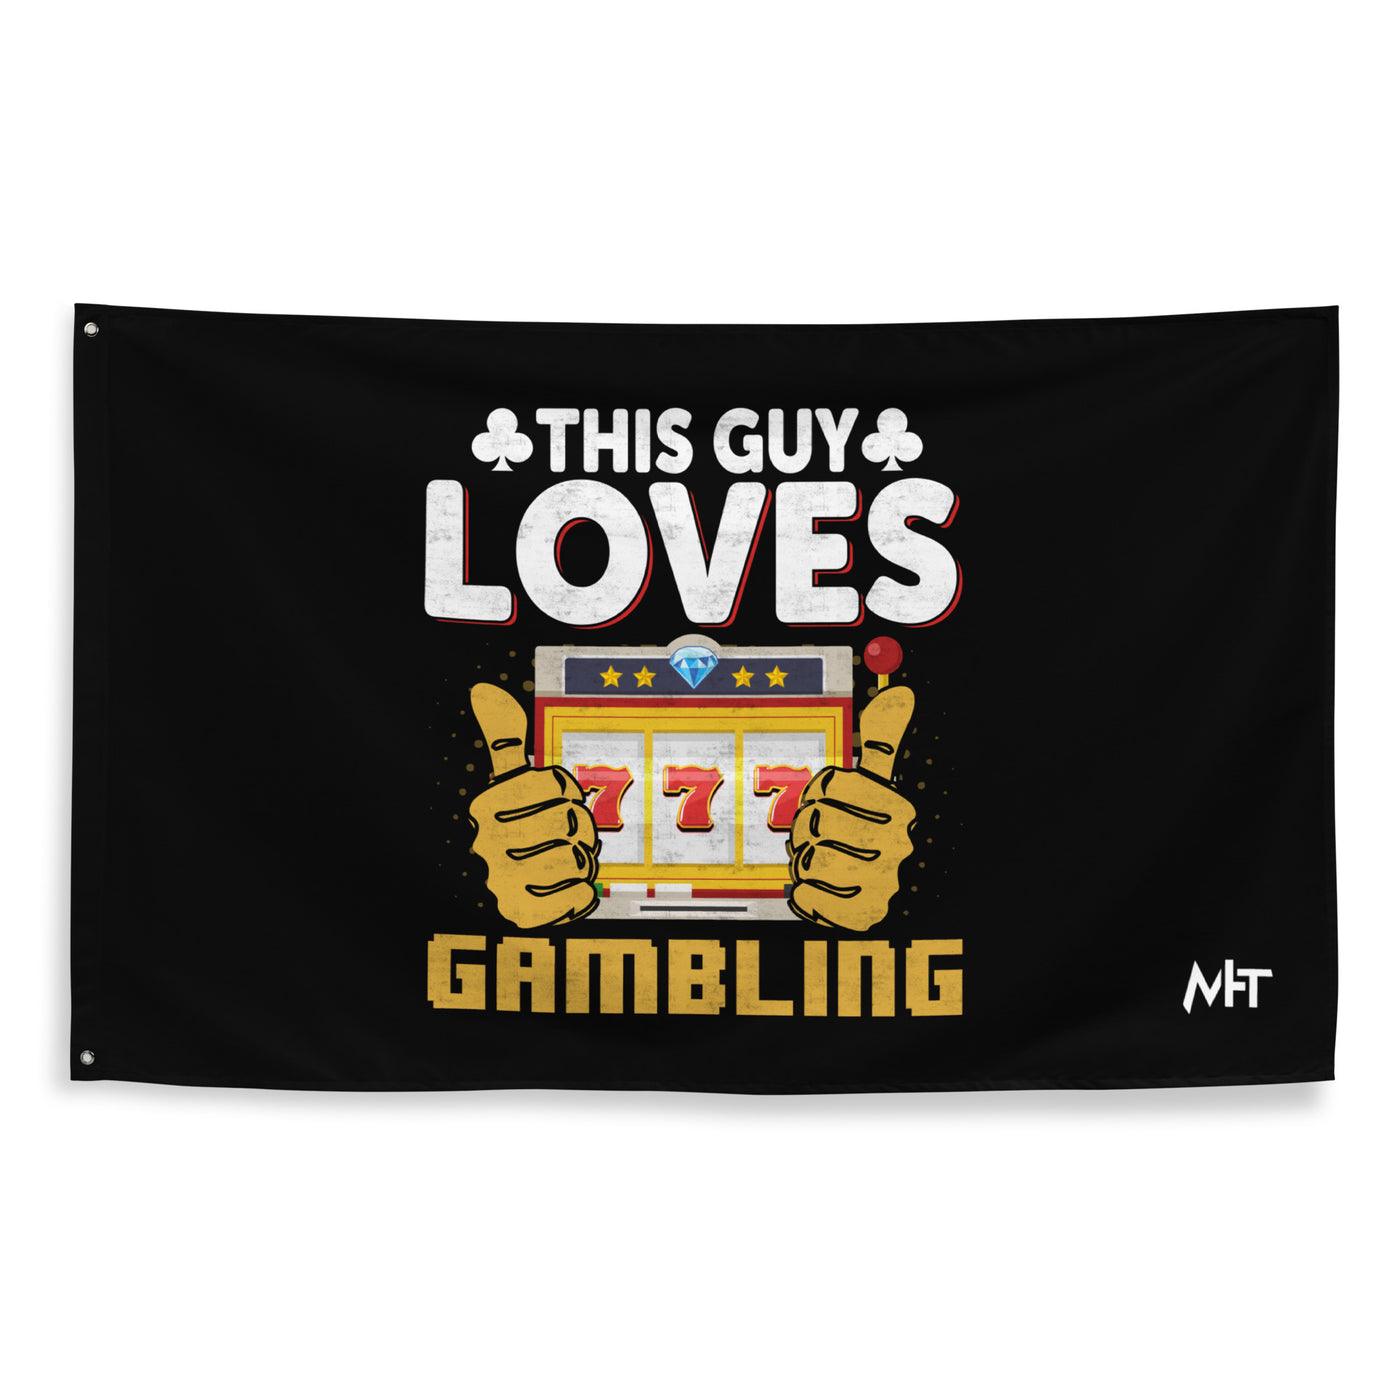 This Guy Loves Gambling - Flag